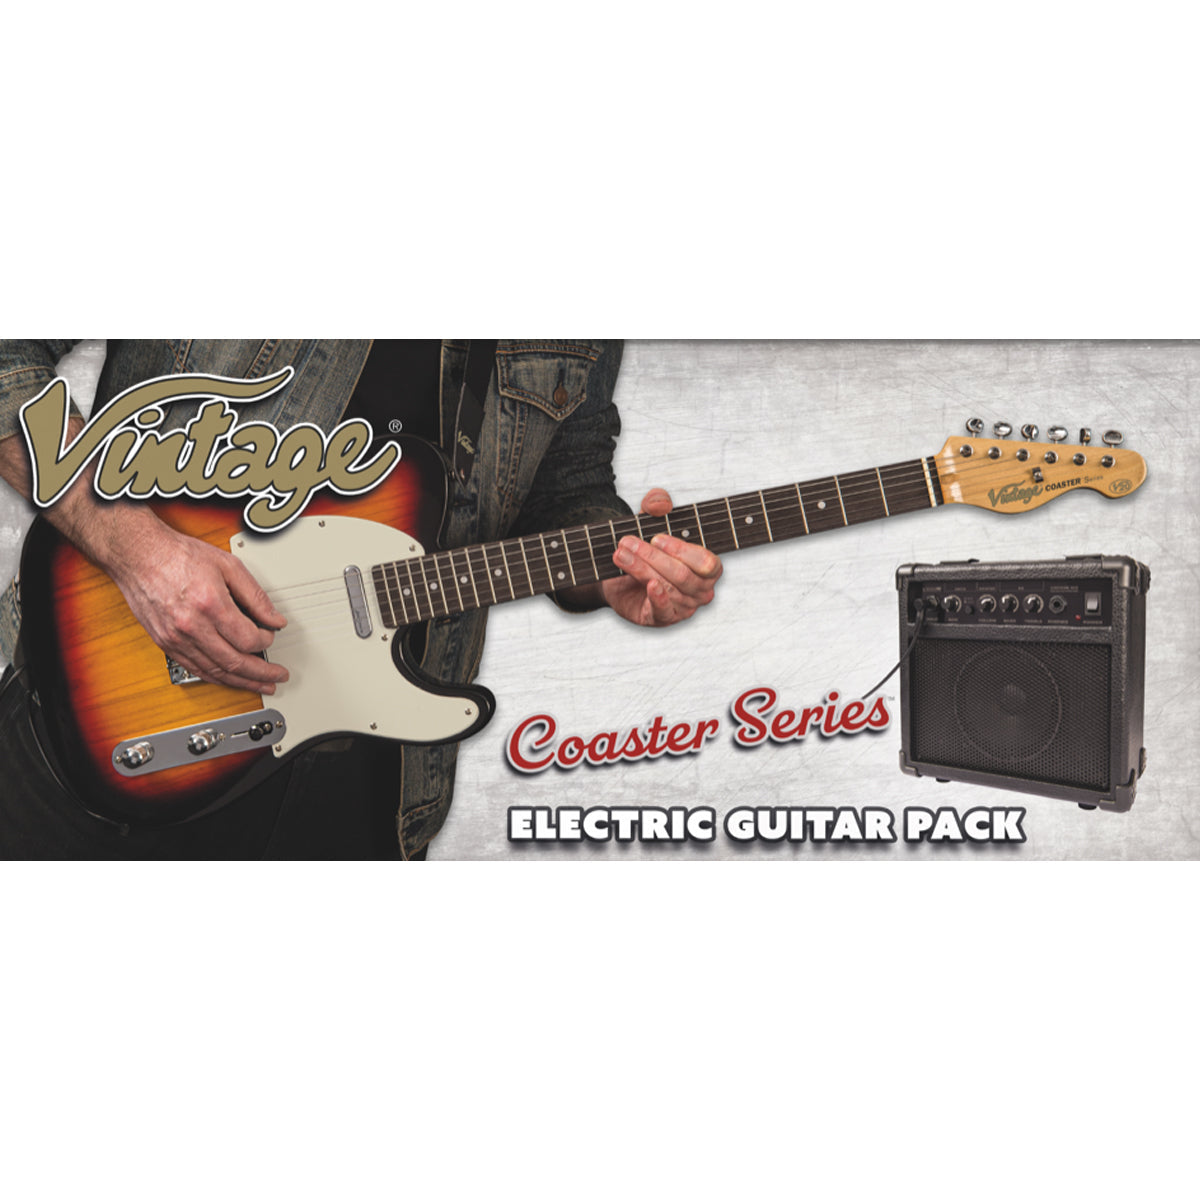 Vintage V20 Coaster Series Electric Guitar Pack ~ 3 Tone Sunburst, Electric Guitar for sale at Richards Guitars.